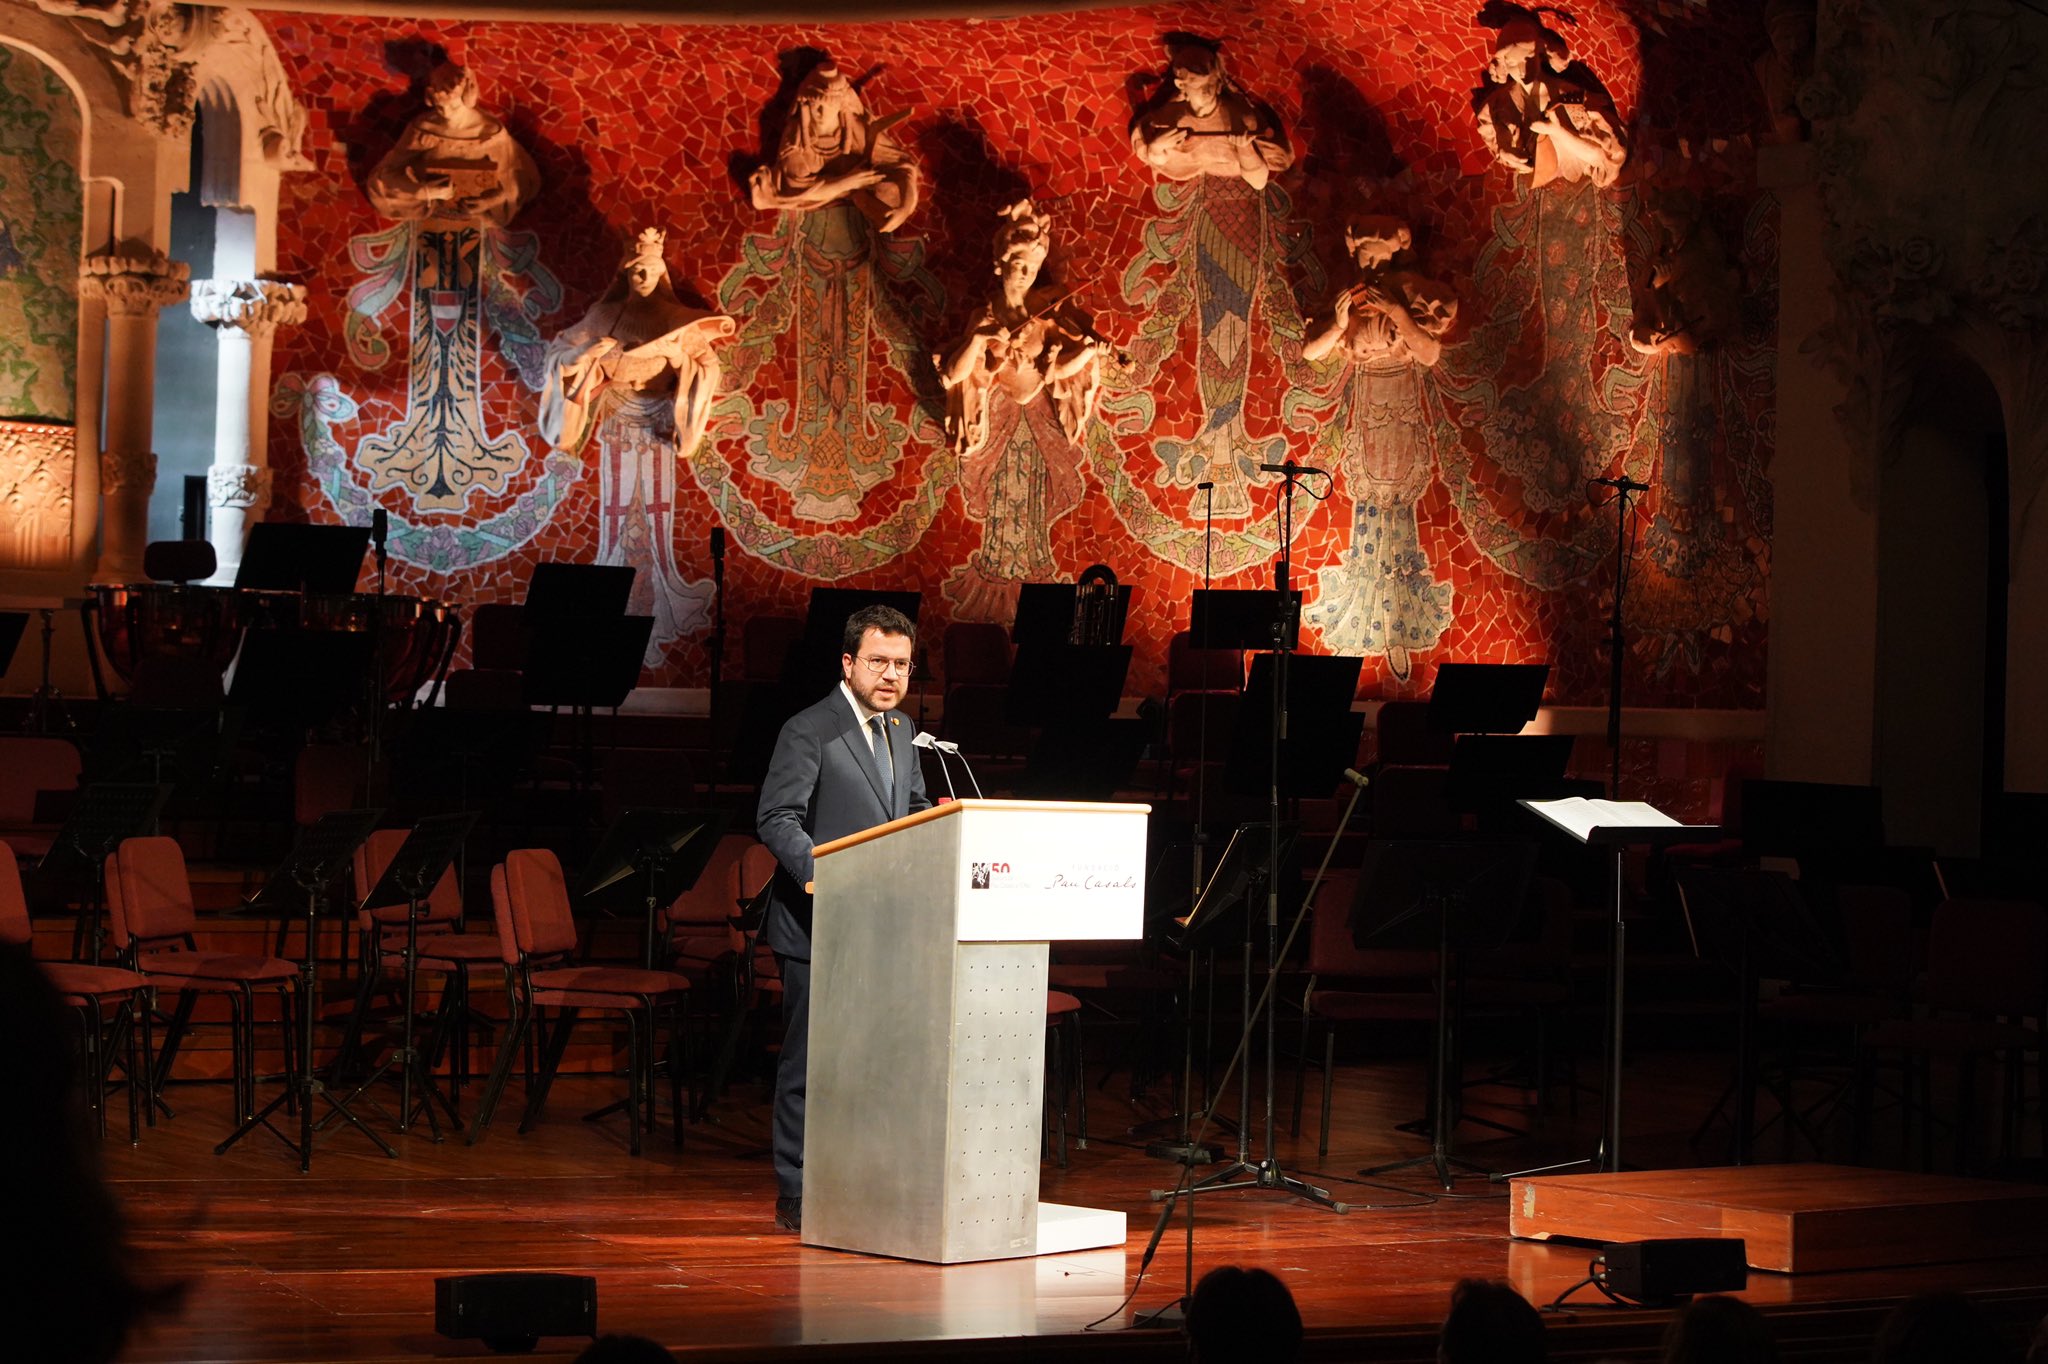 Aragonès reivindica el compromiso de Casals "con la paz y contra el fascismo"